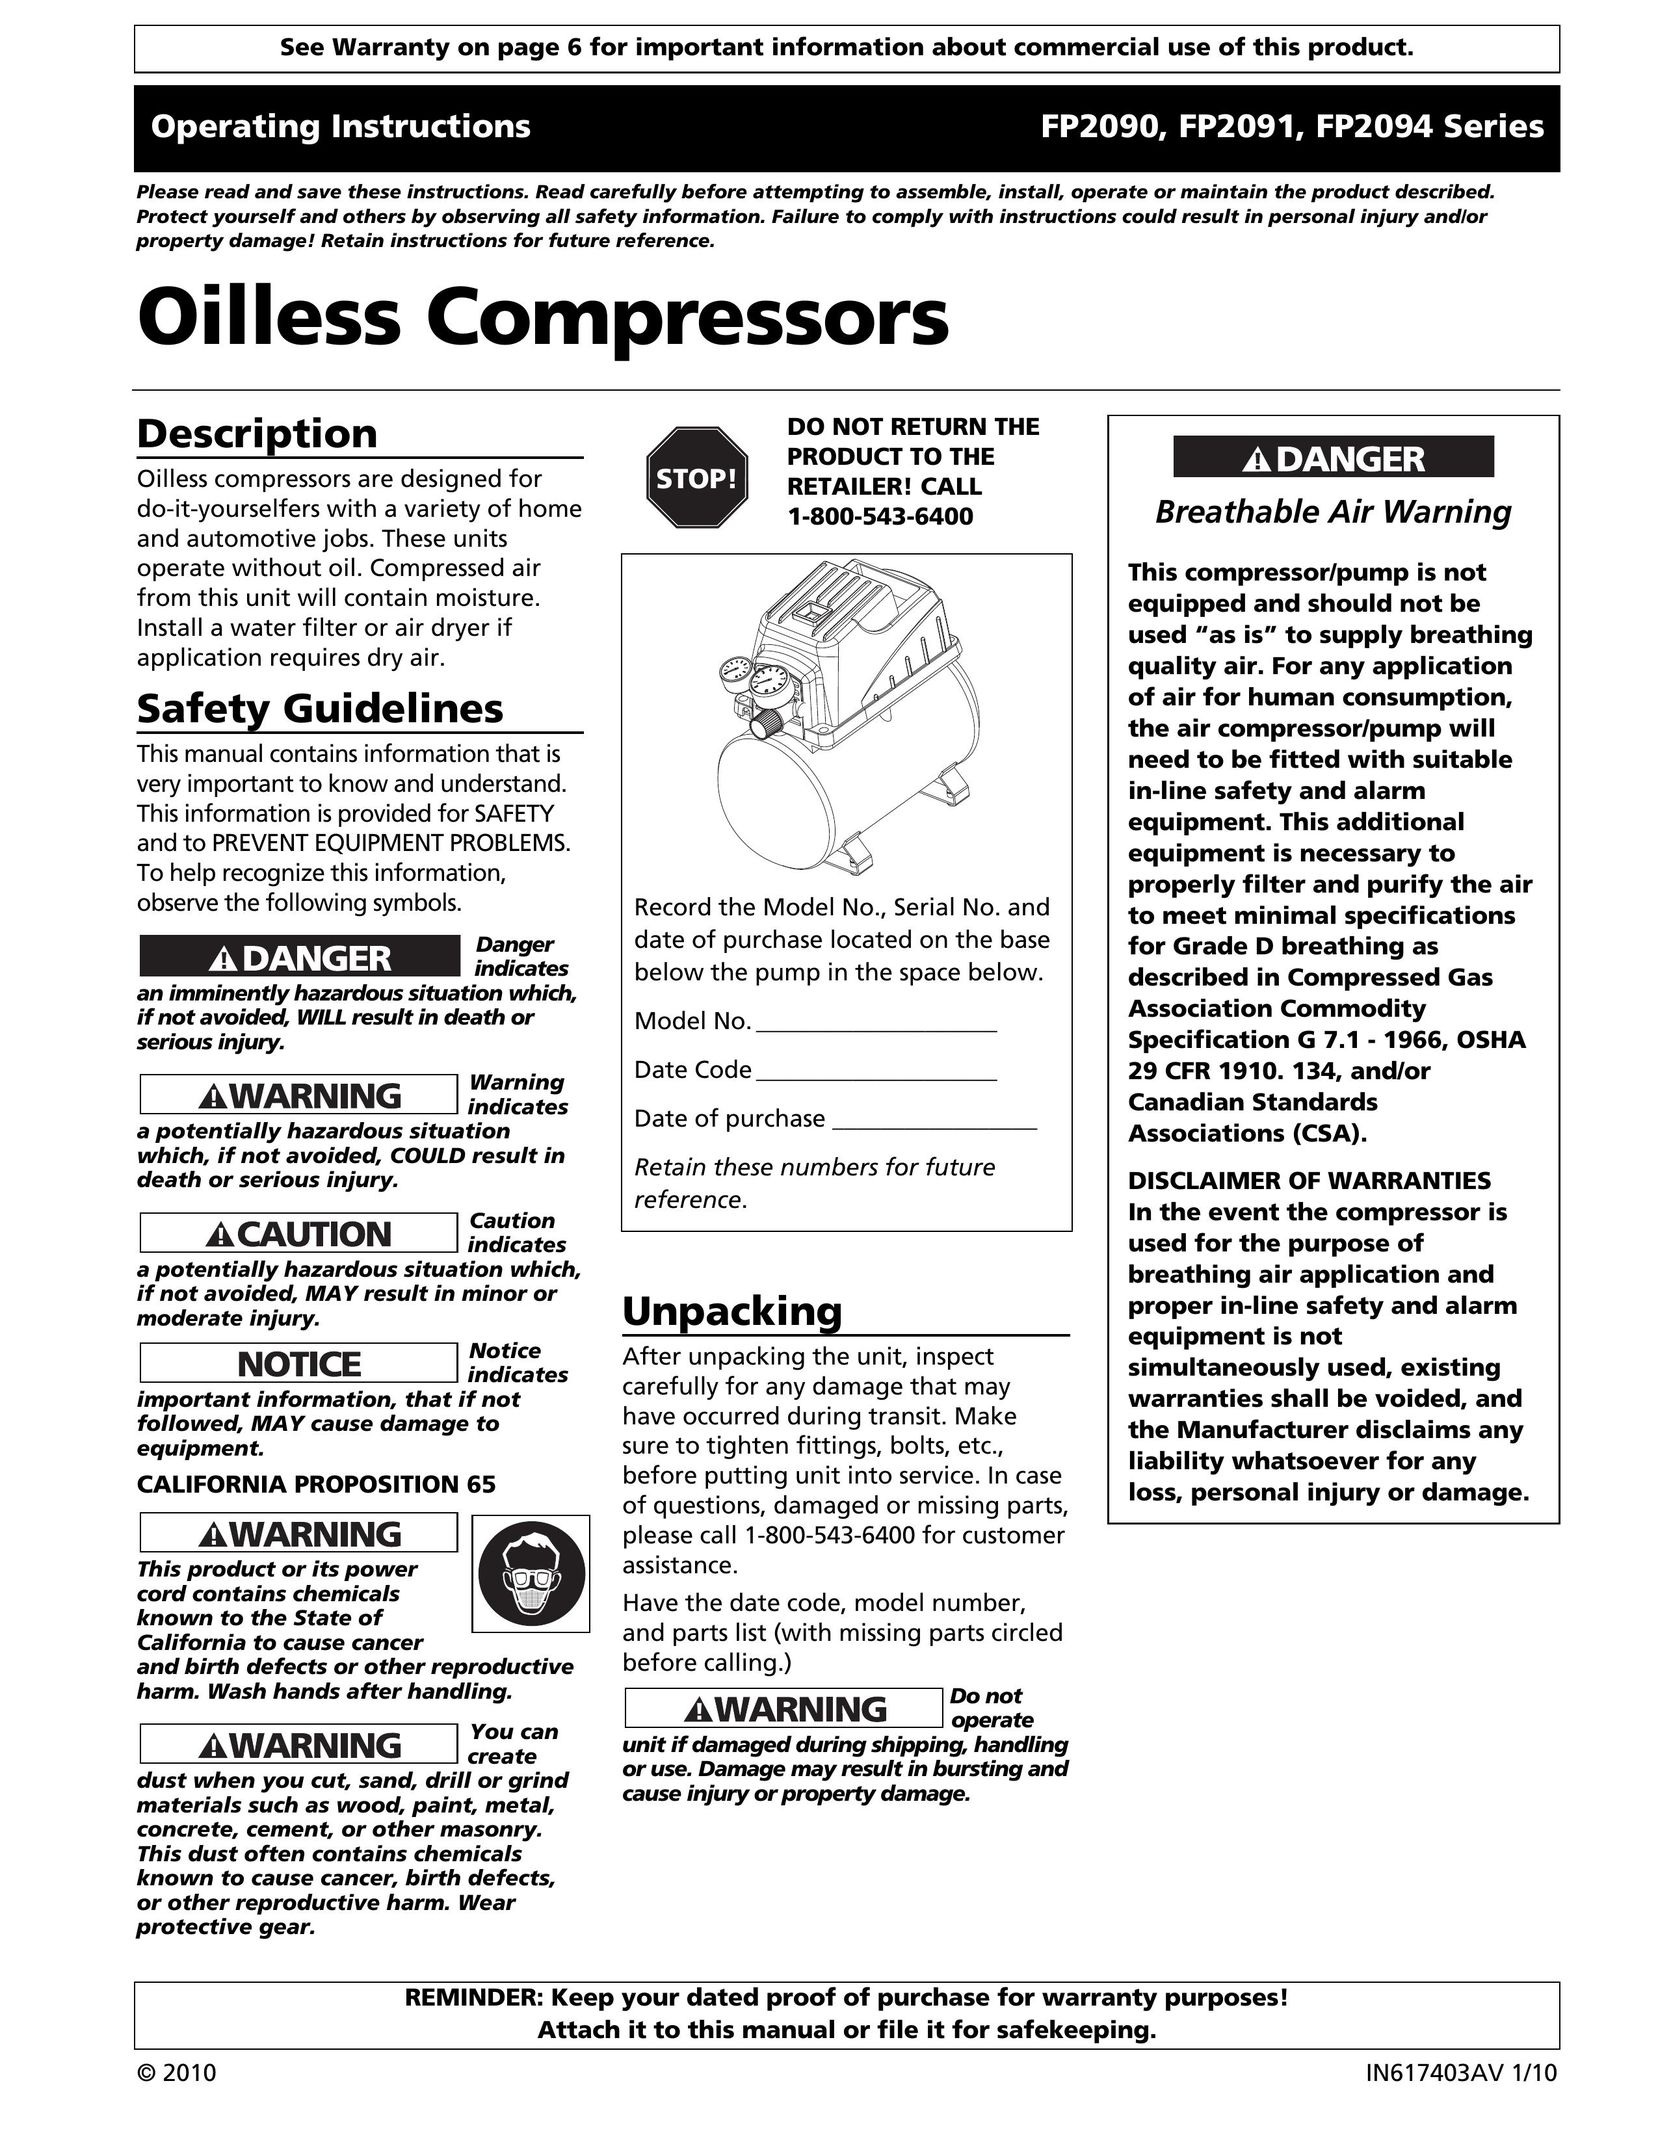 Campbell Hausfeld FP2090 Air Compressor User Manual